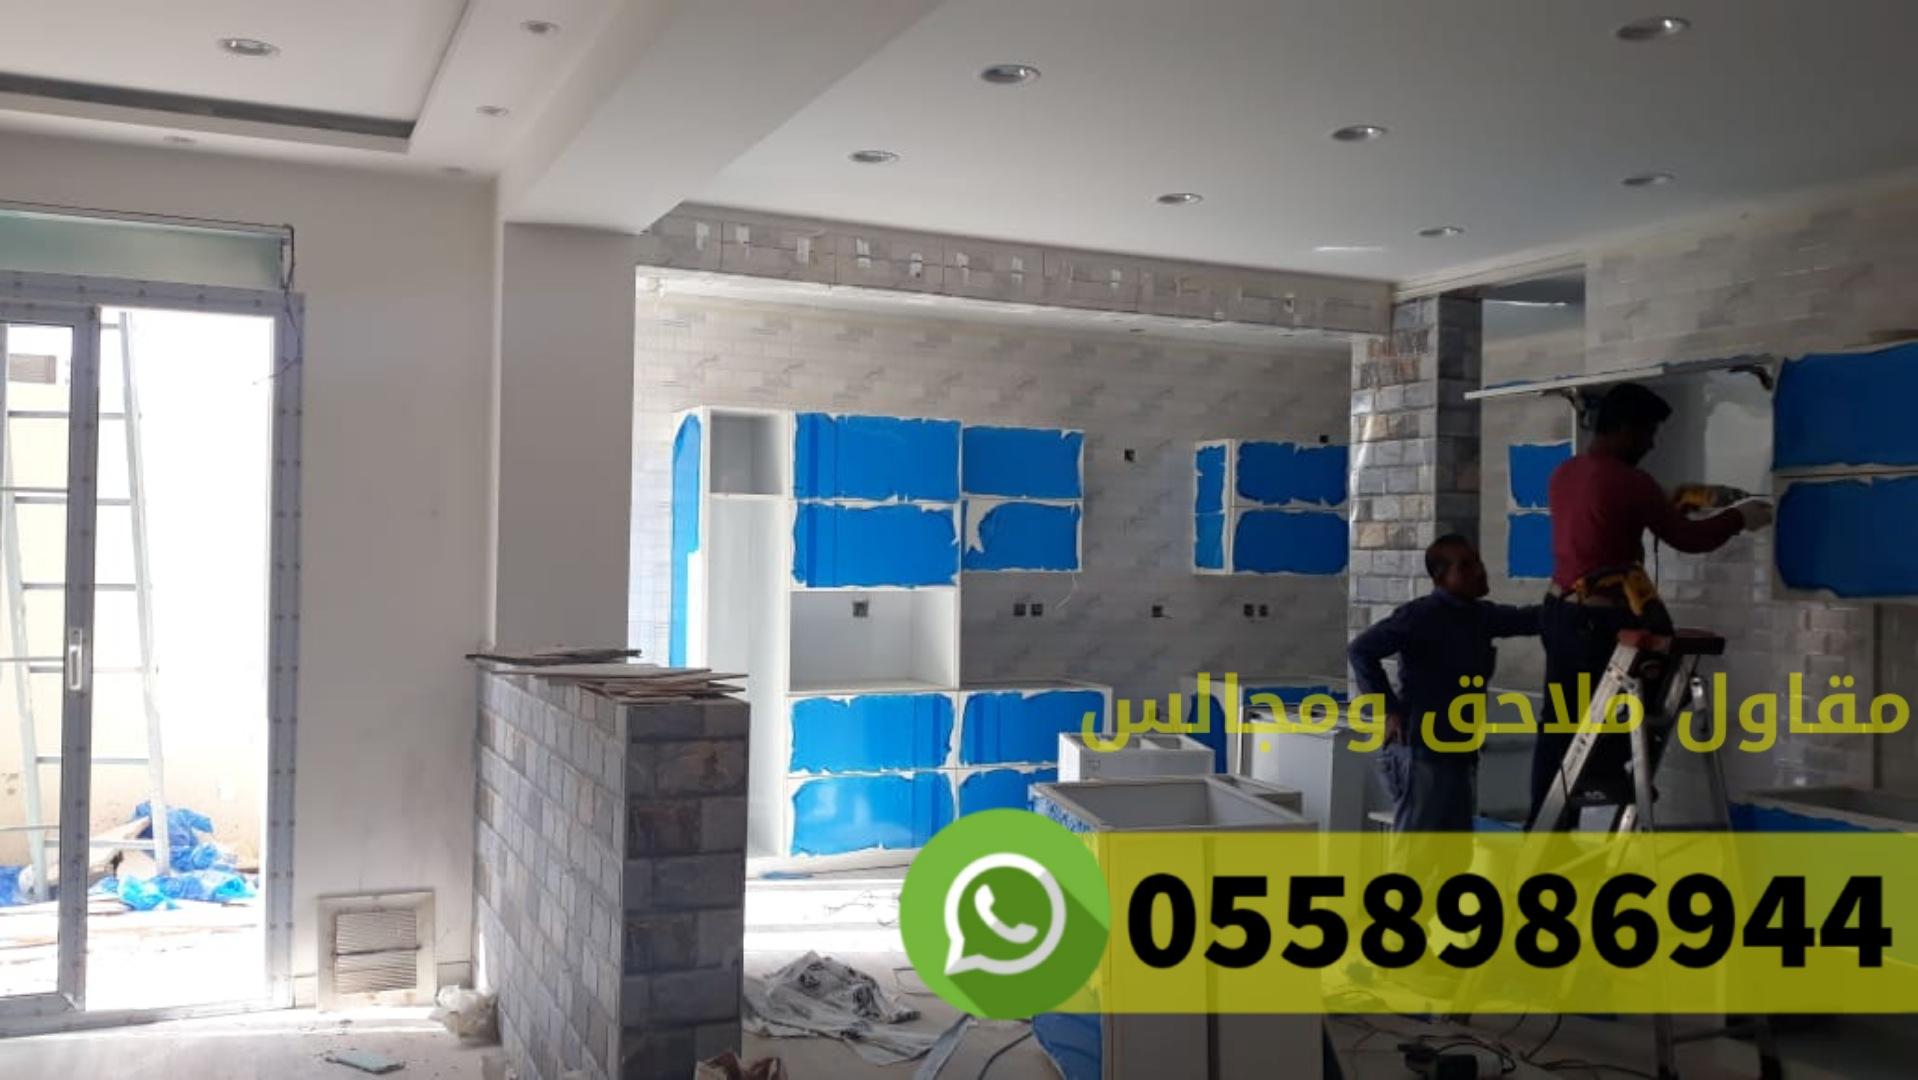 بناء غرف ملاحق مجالس في مكة المكرمة حي النوارية ,0558986944 912128119